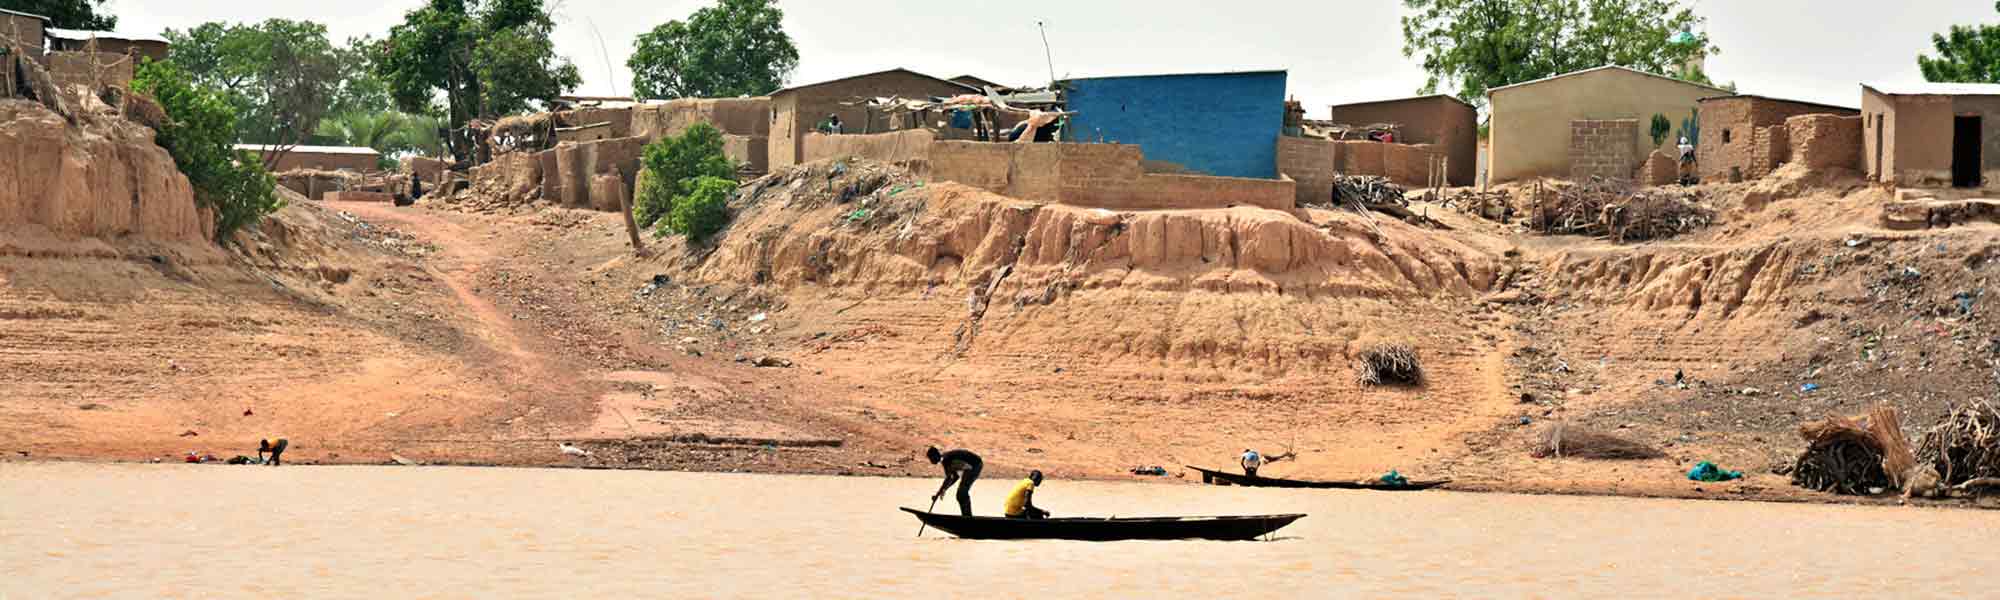 Landsby ved elven med to personer i en båt i Mali